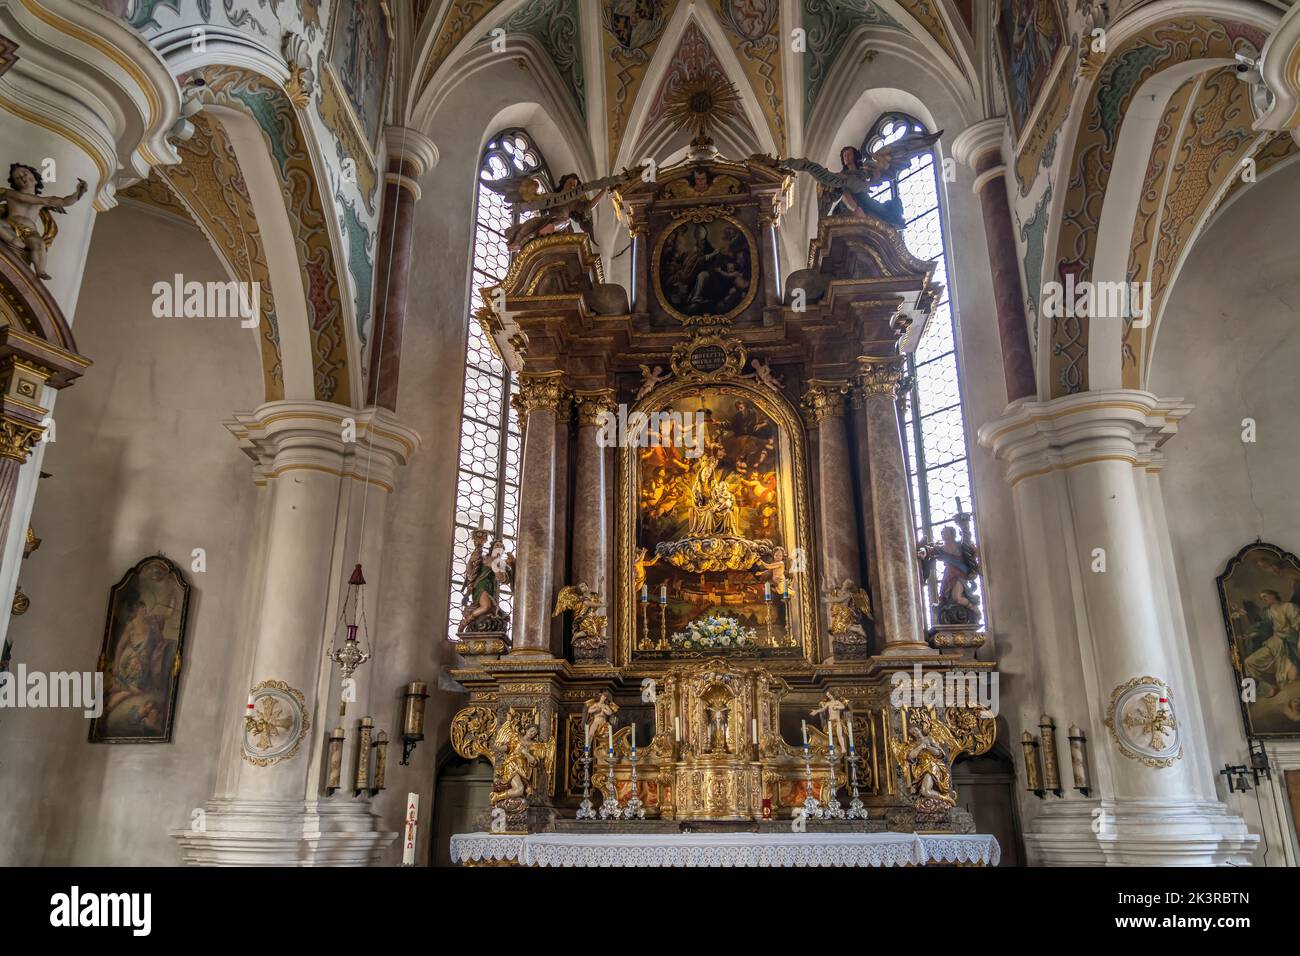 Altar der Frauenkirche in Wasserburg am Inn, Bayern, Deutschland |  Frauenkirche Church of our Lady altar, Wasserburg am Inn, Bavaria, Gemany Stock Photo